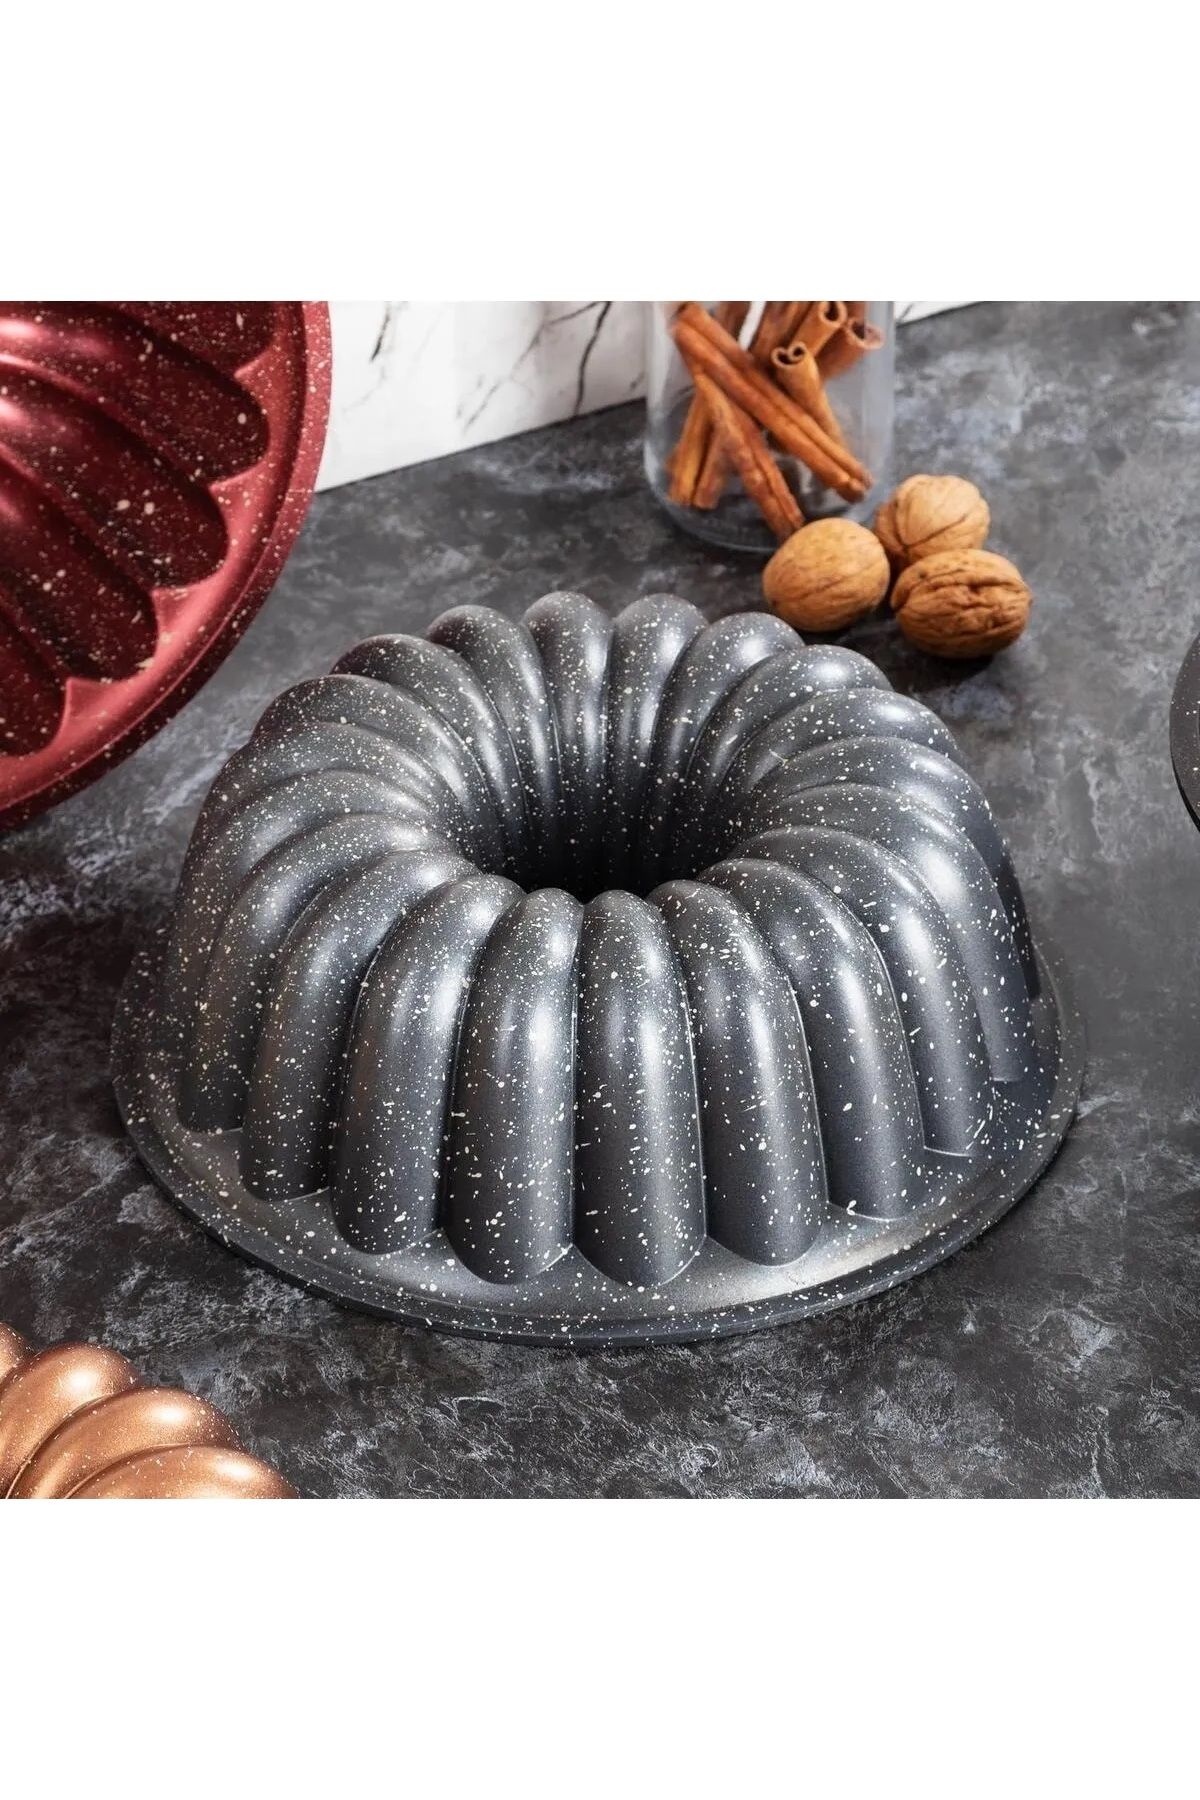 Penguen Aluminyum Döküm Granit Damla Kek Kalıbı siyah renk